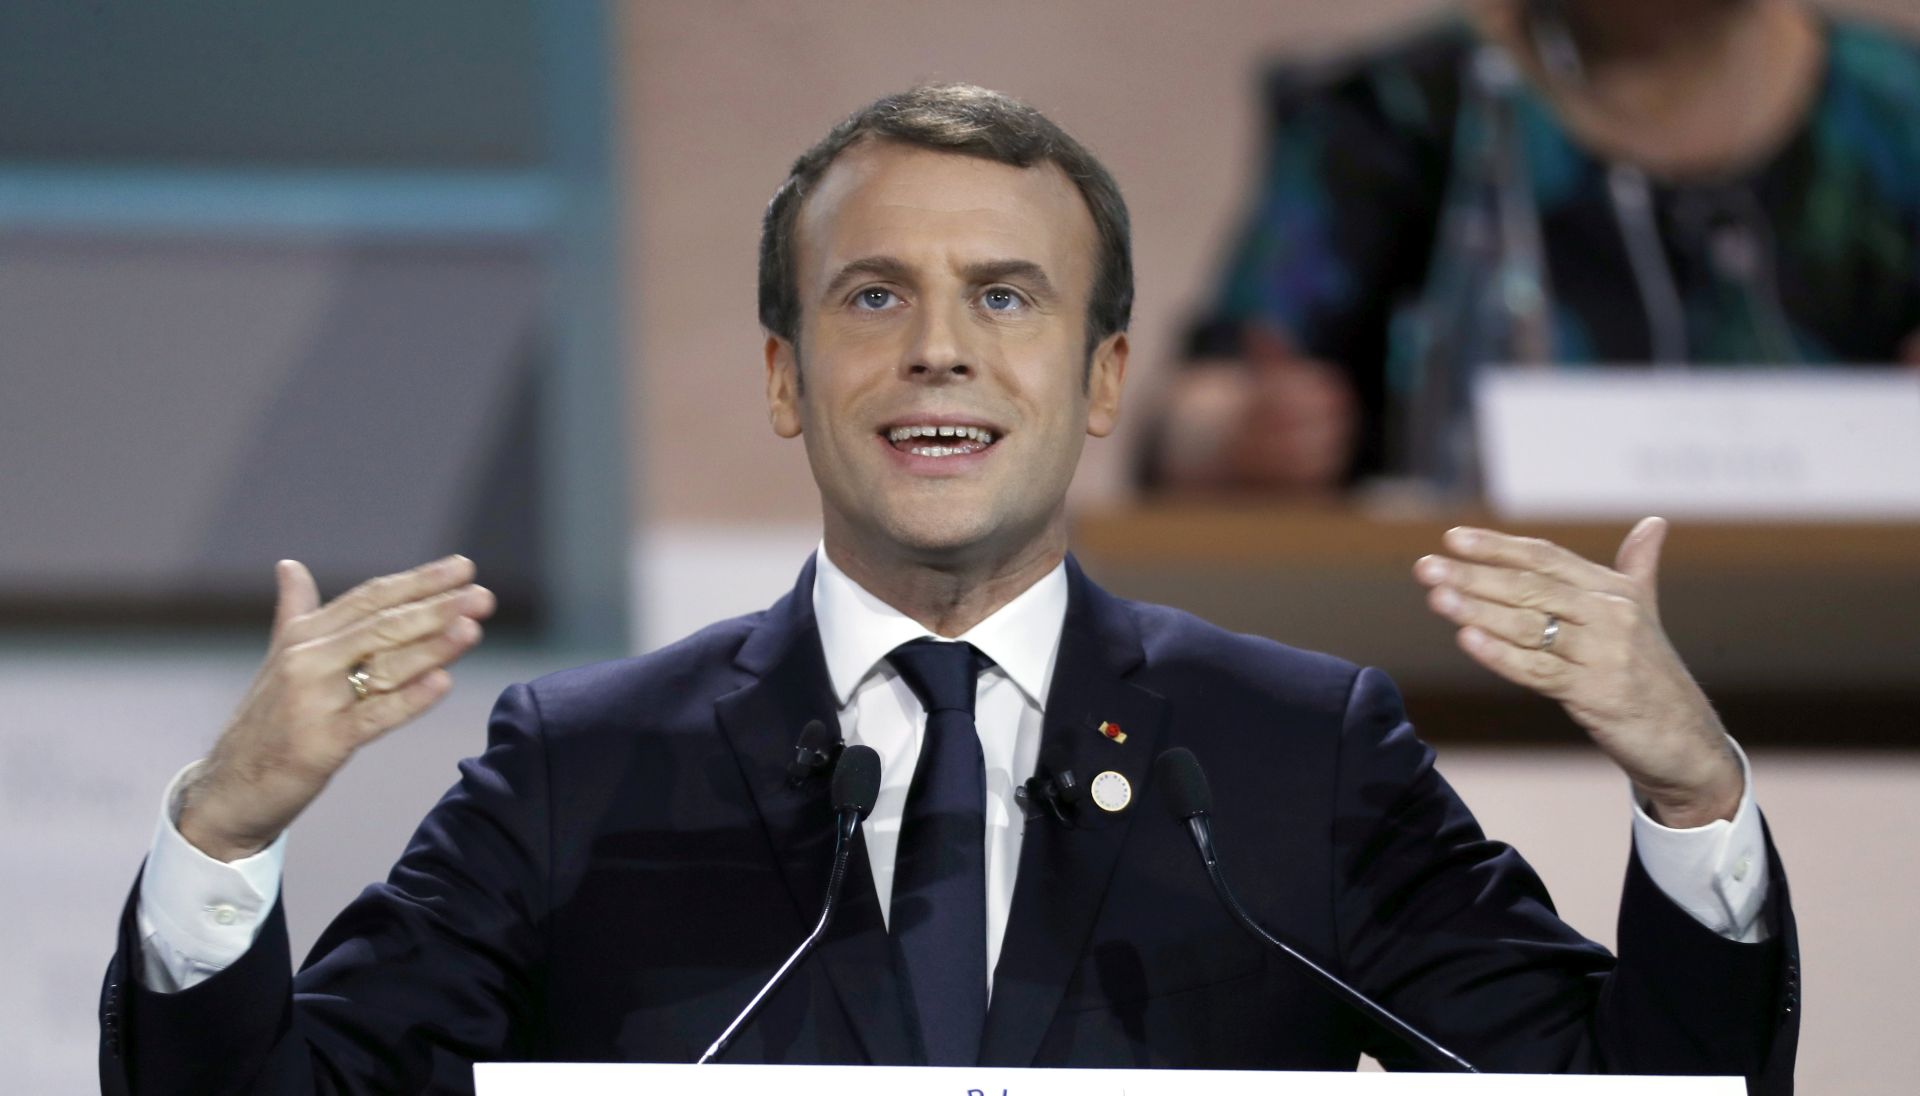 Macron smatra neprihvatljivim Asadove kritike upućene Francuskoj